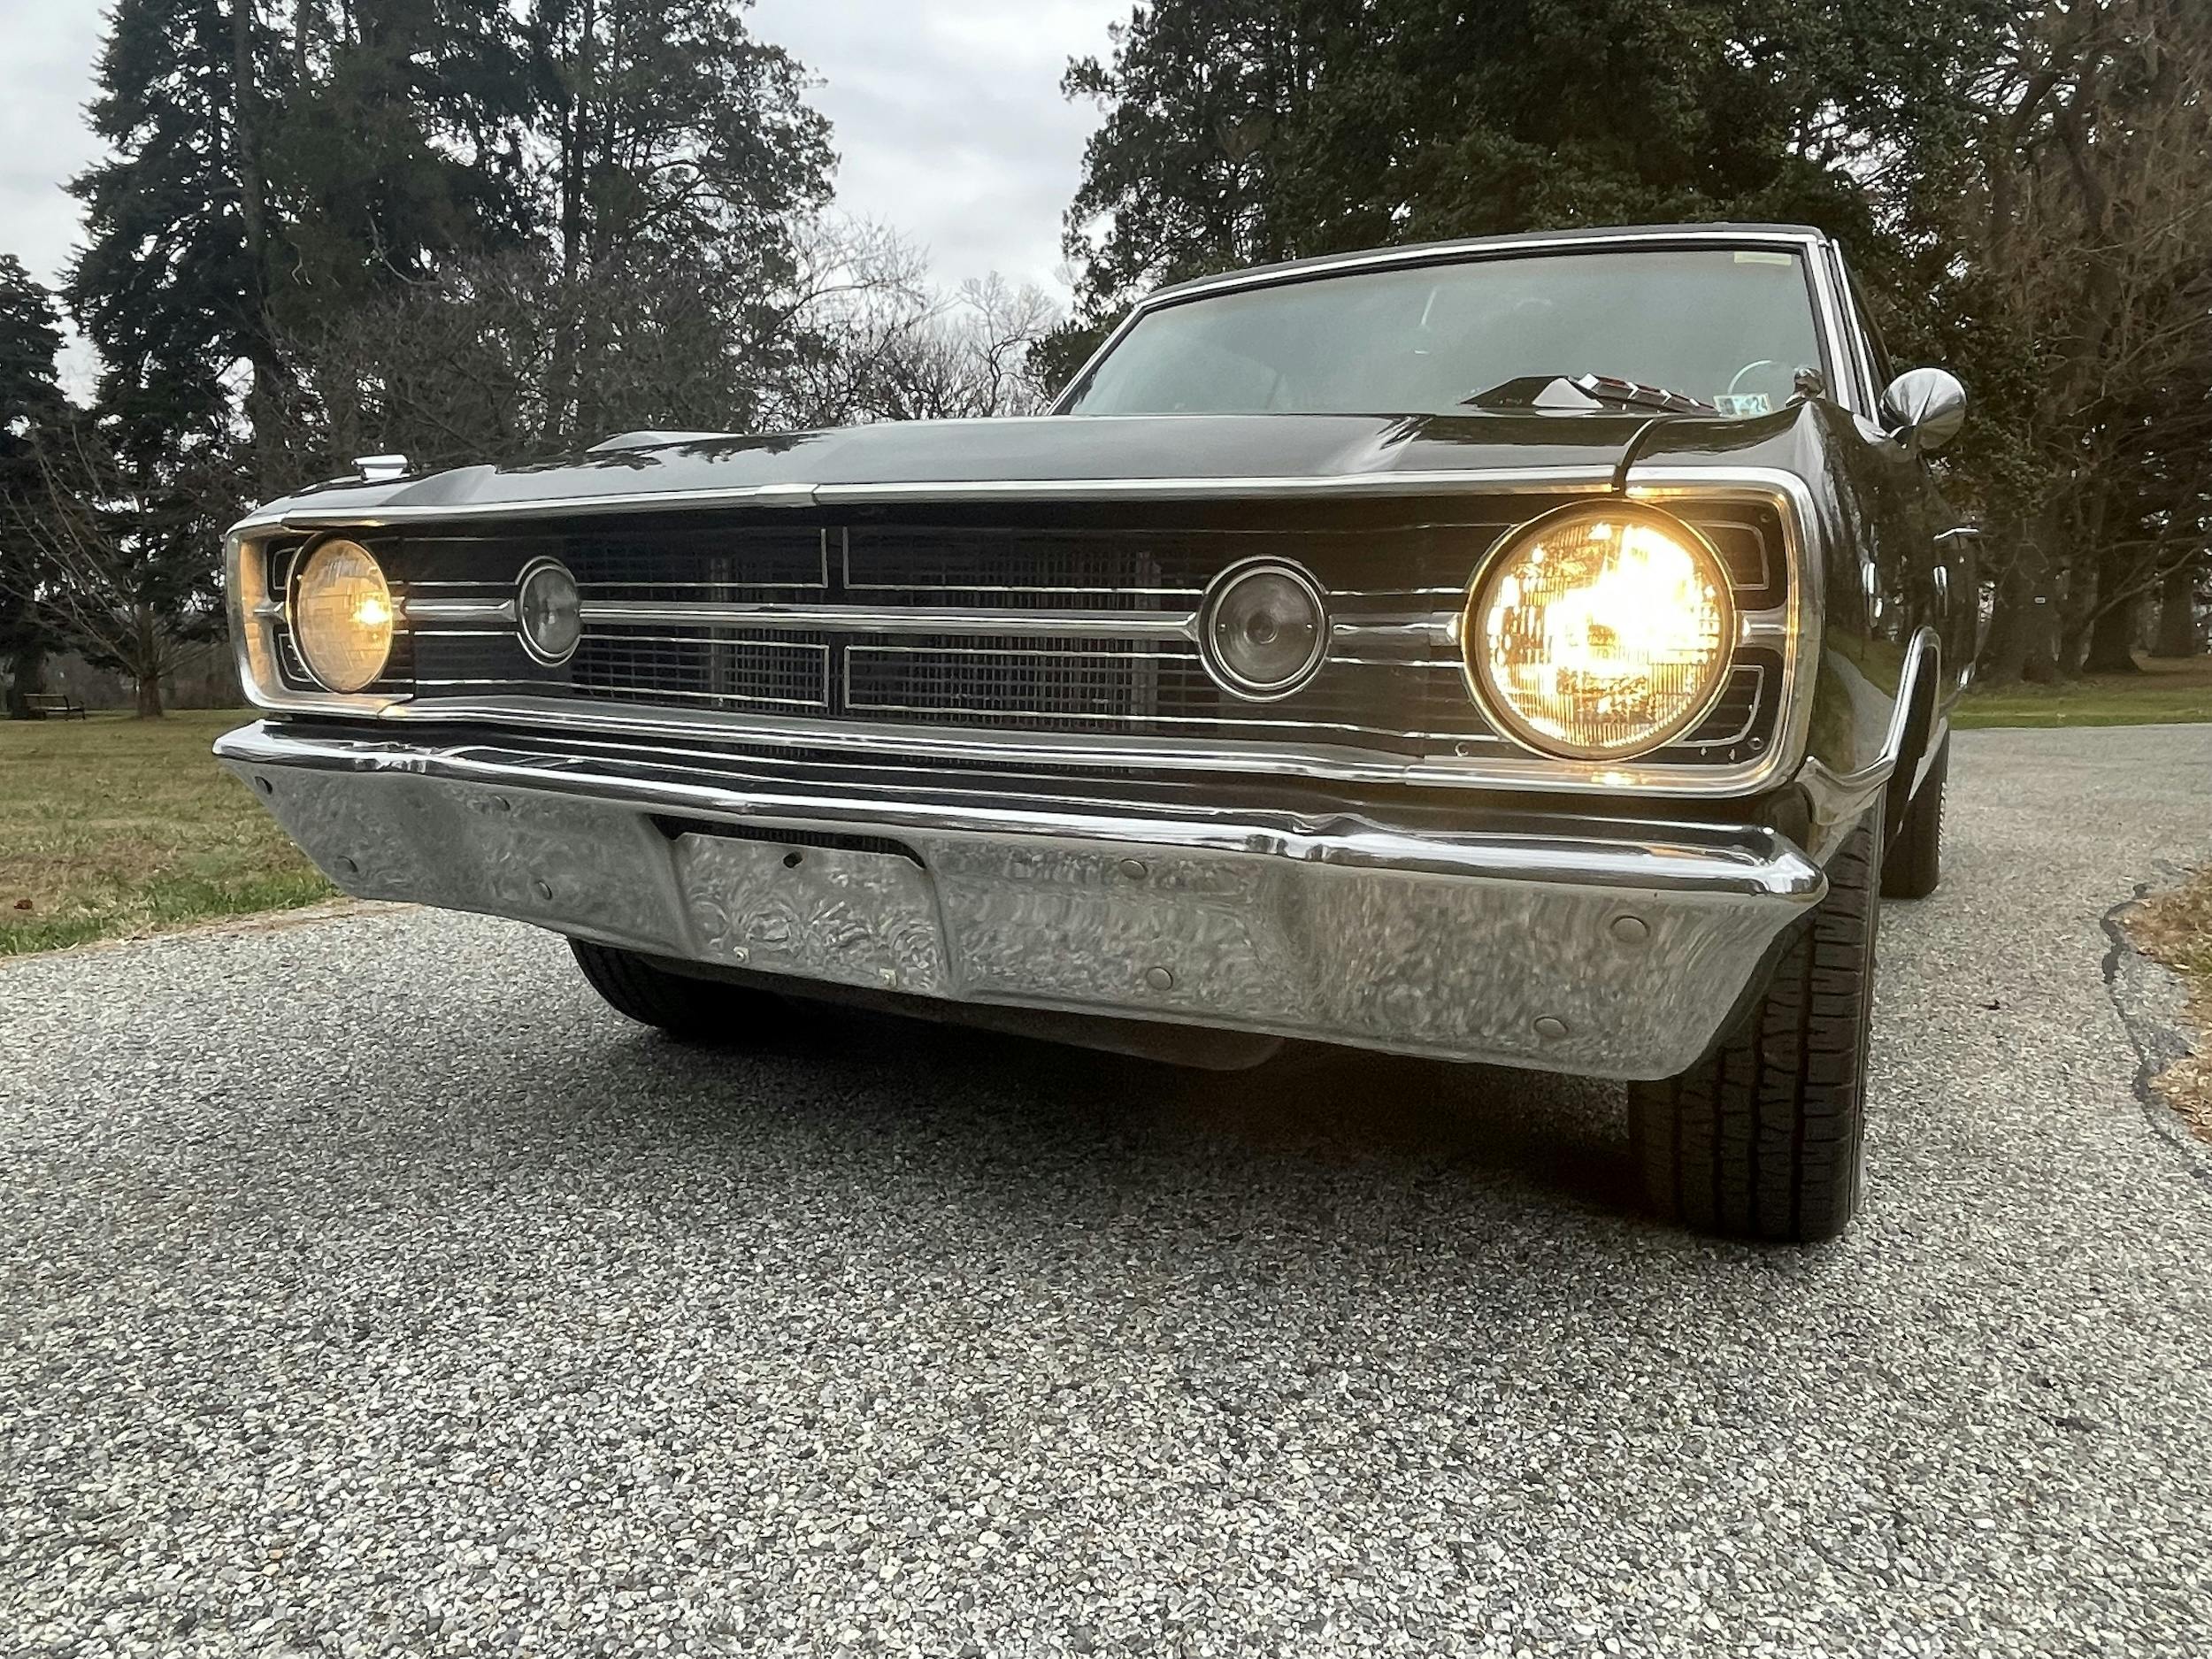 1968 Dodge Dart GT front lights on